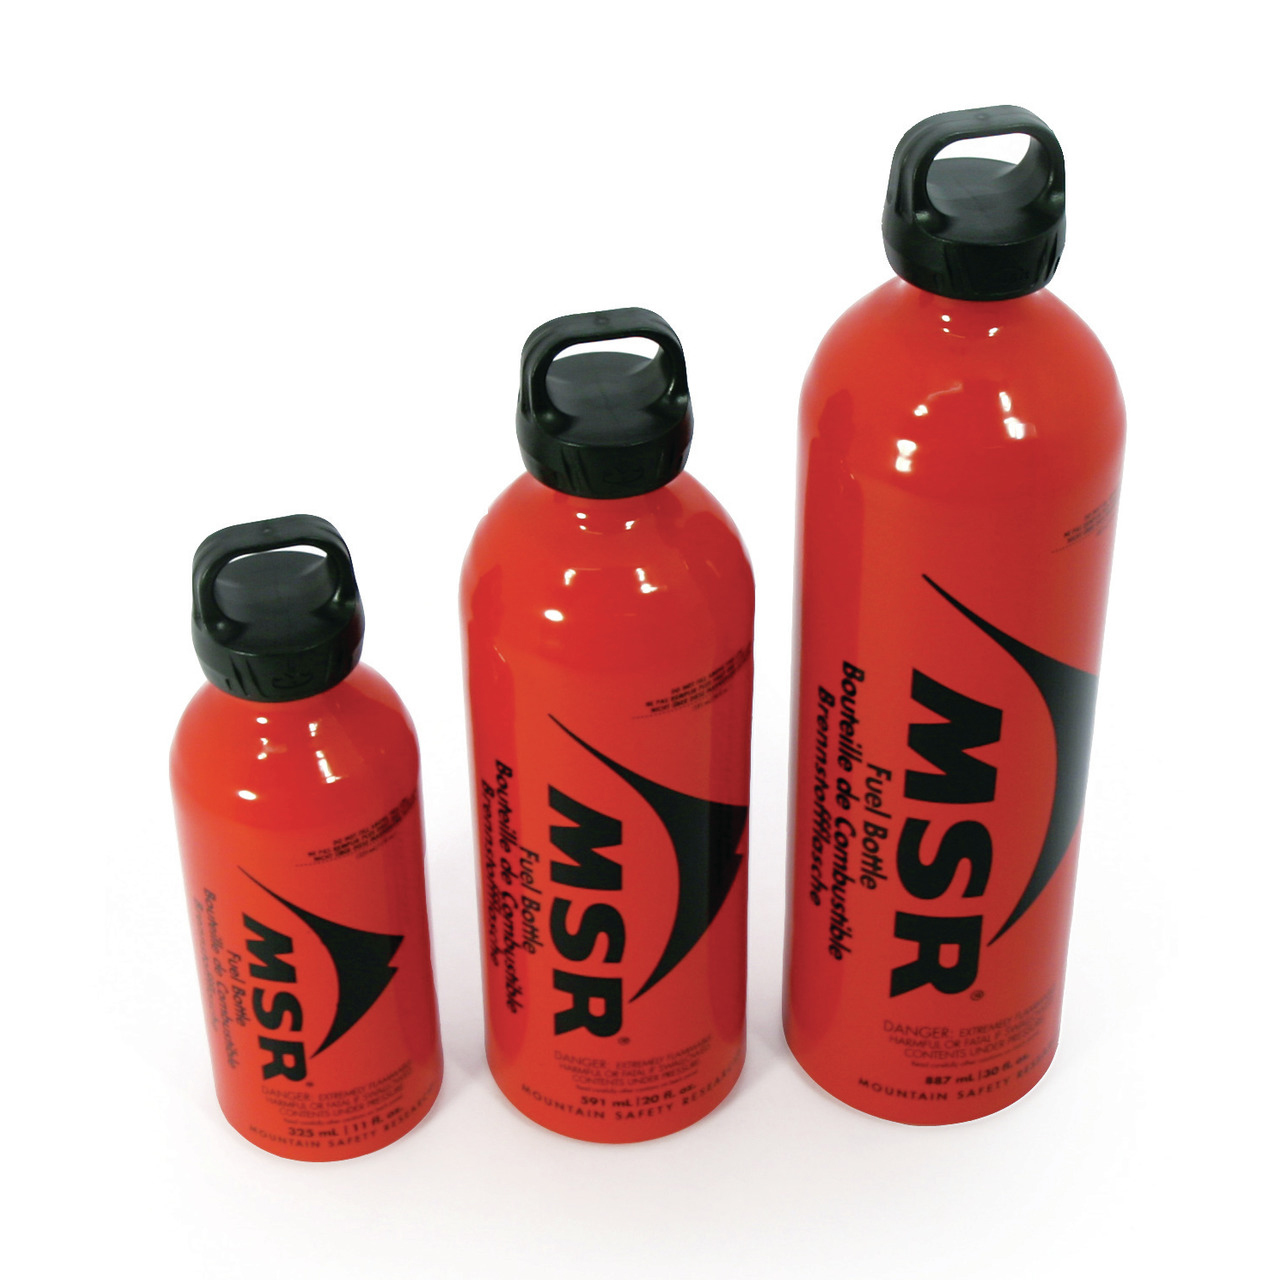 MSR Brennstoffflaschen - Rot, 325 ml / 11 oz